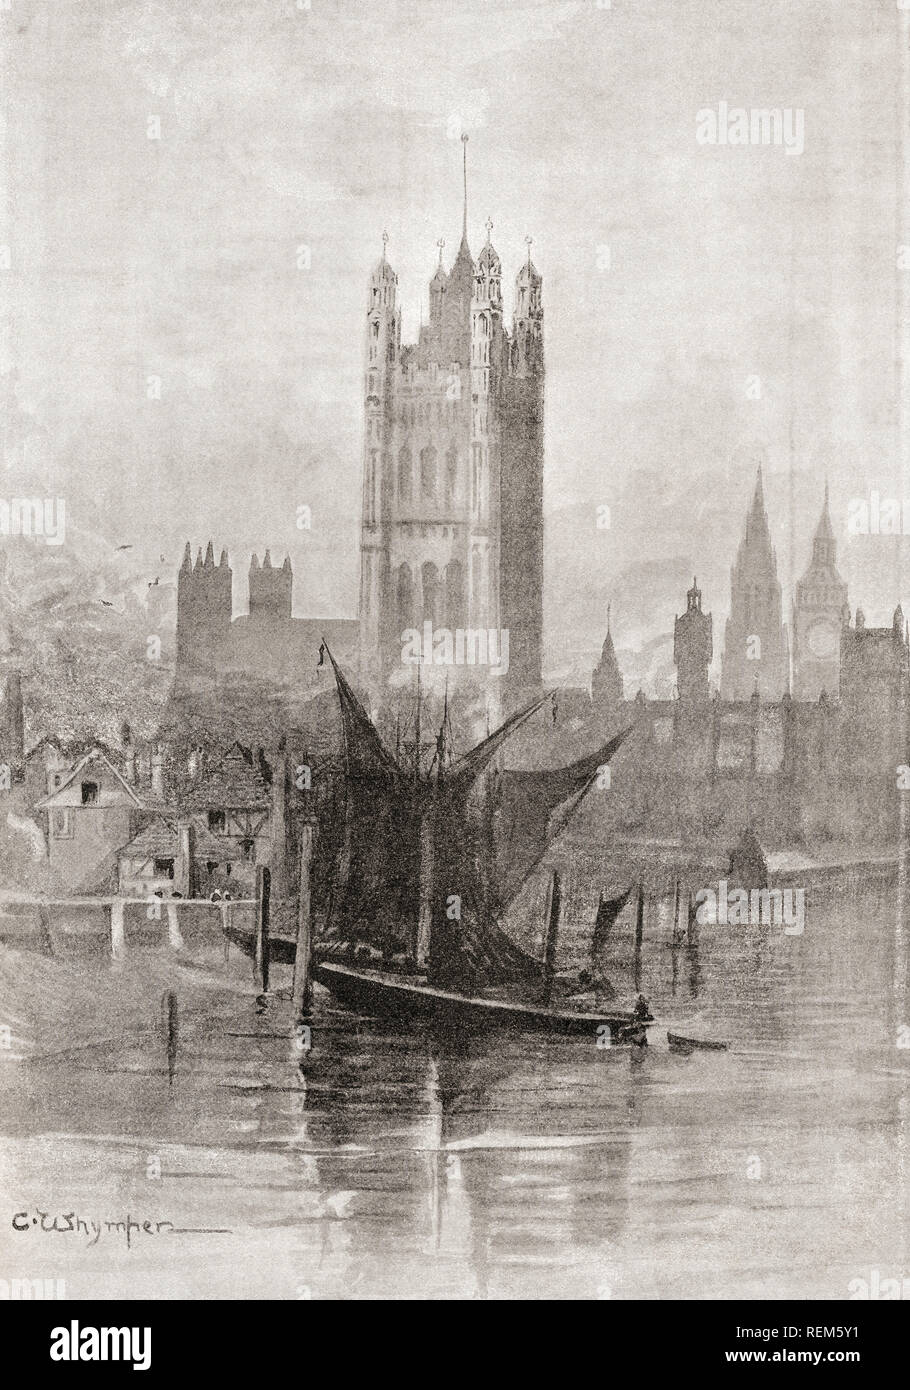 Il nuovo Palazzo di Westminster, City of Westminster, Londra, Inghilterra, visto qui dopo la sua ricostruzione in seguito all'incendio del 1834 che ha praticamente distrutto il palazzo vecchio. Da Londra Foto, pubblicato 1890 Foto Stock